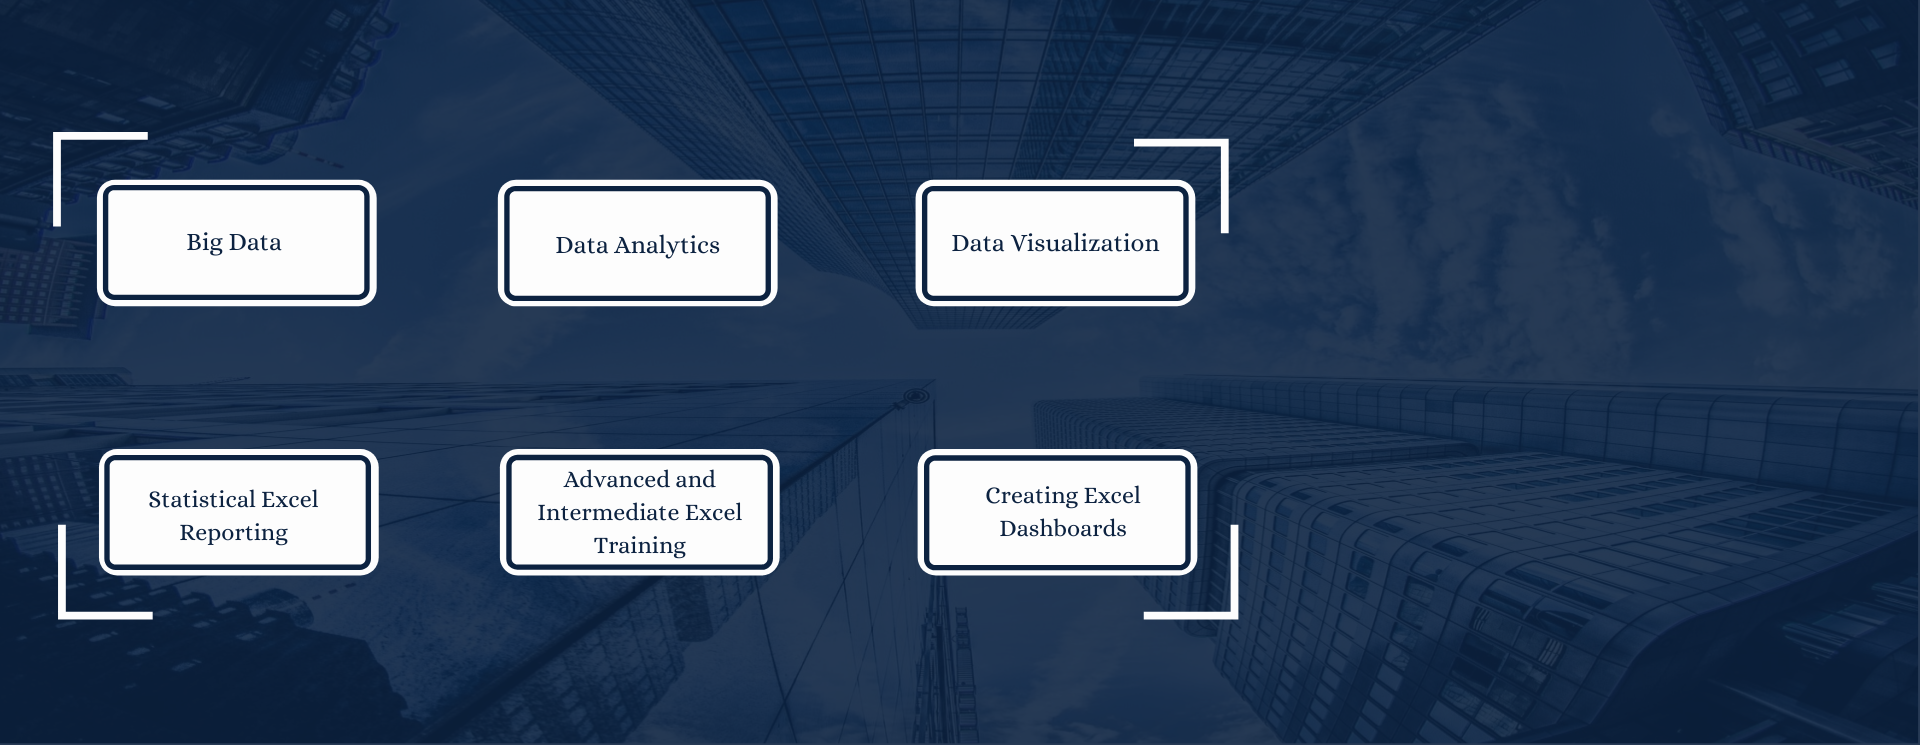 Data Analytics Trainings In Singapore